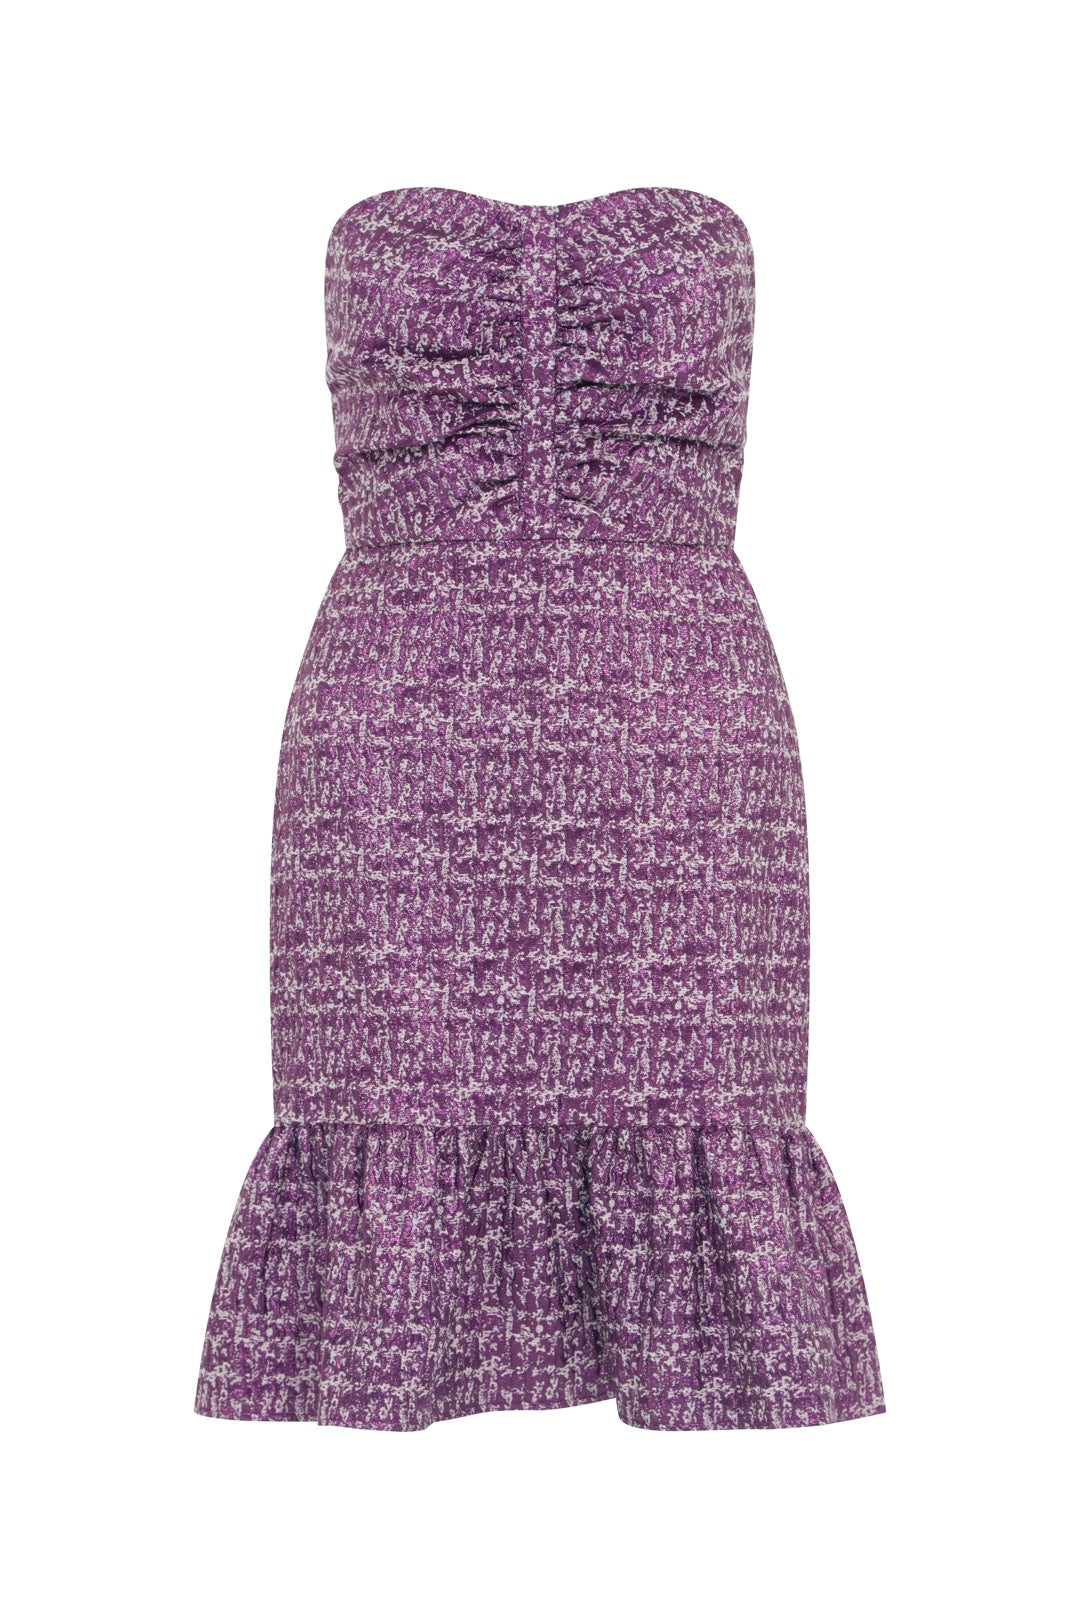 Fresha London Women's Pink / Purple Sloan Dress Purple Metallic